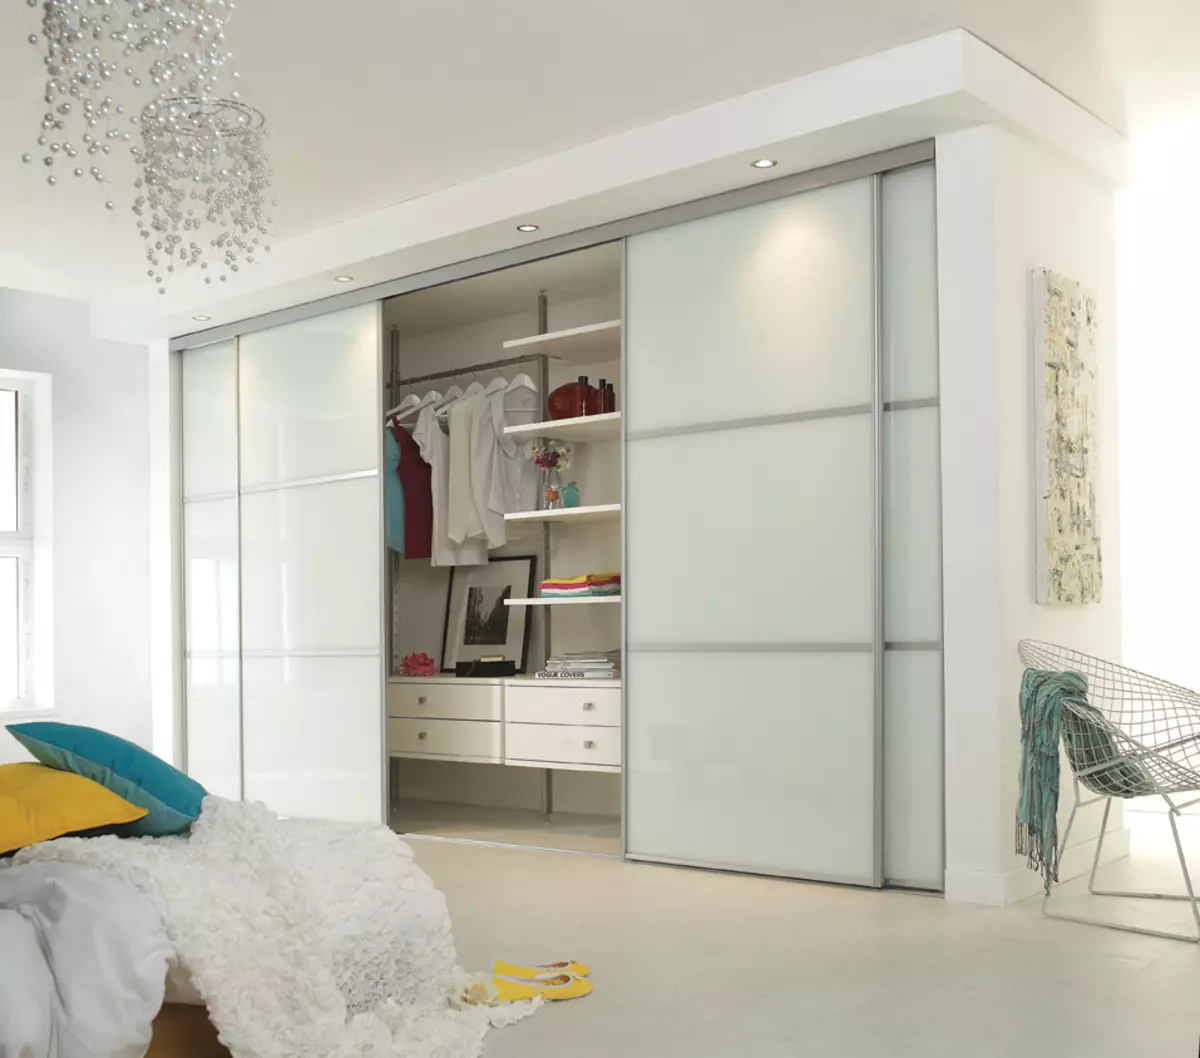 内置卧室橱柜（55张照片）：大型内置角柜和小型衣柜的设计 9928_5